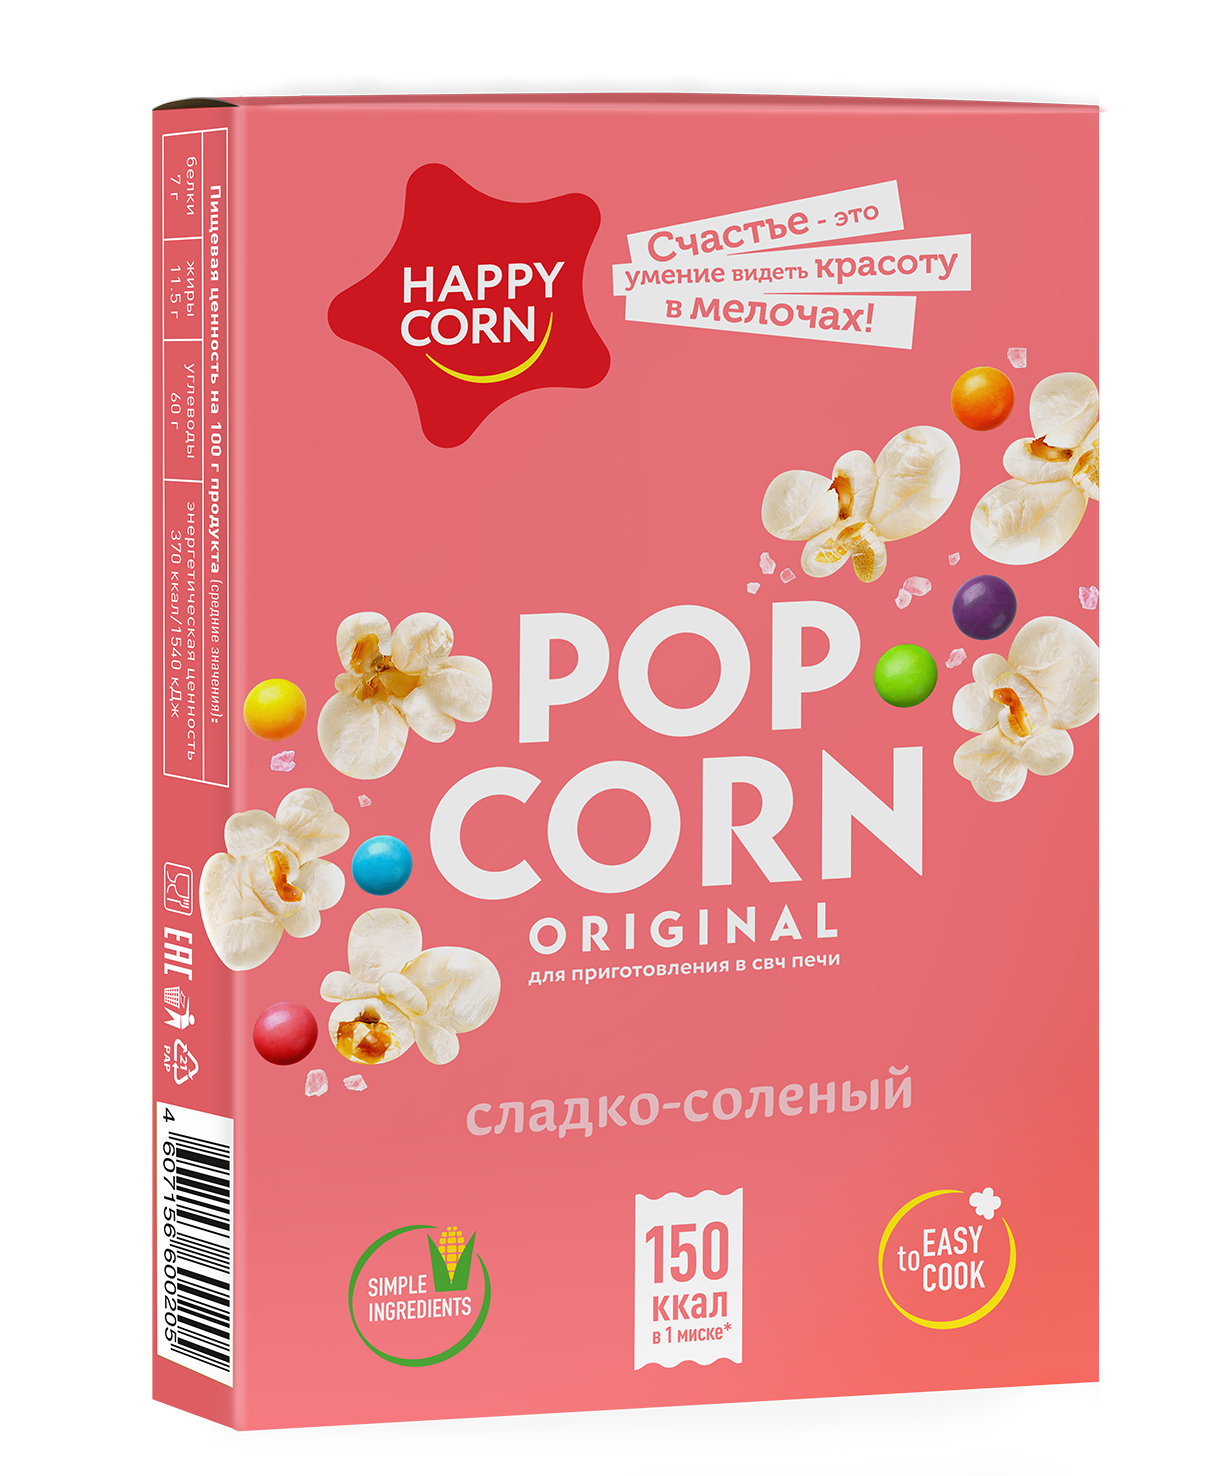 Попкорн для свч. Попкорн для СВЧ Хэппи Корн со. "Happy Corn" попкорн для СВЧ карамель. Happy Corn попкорн для СВЧ соленый. Попкорн для микроволновки Happy Corn.